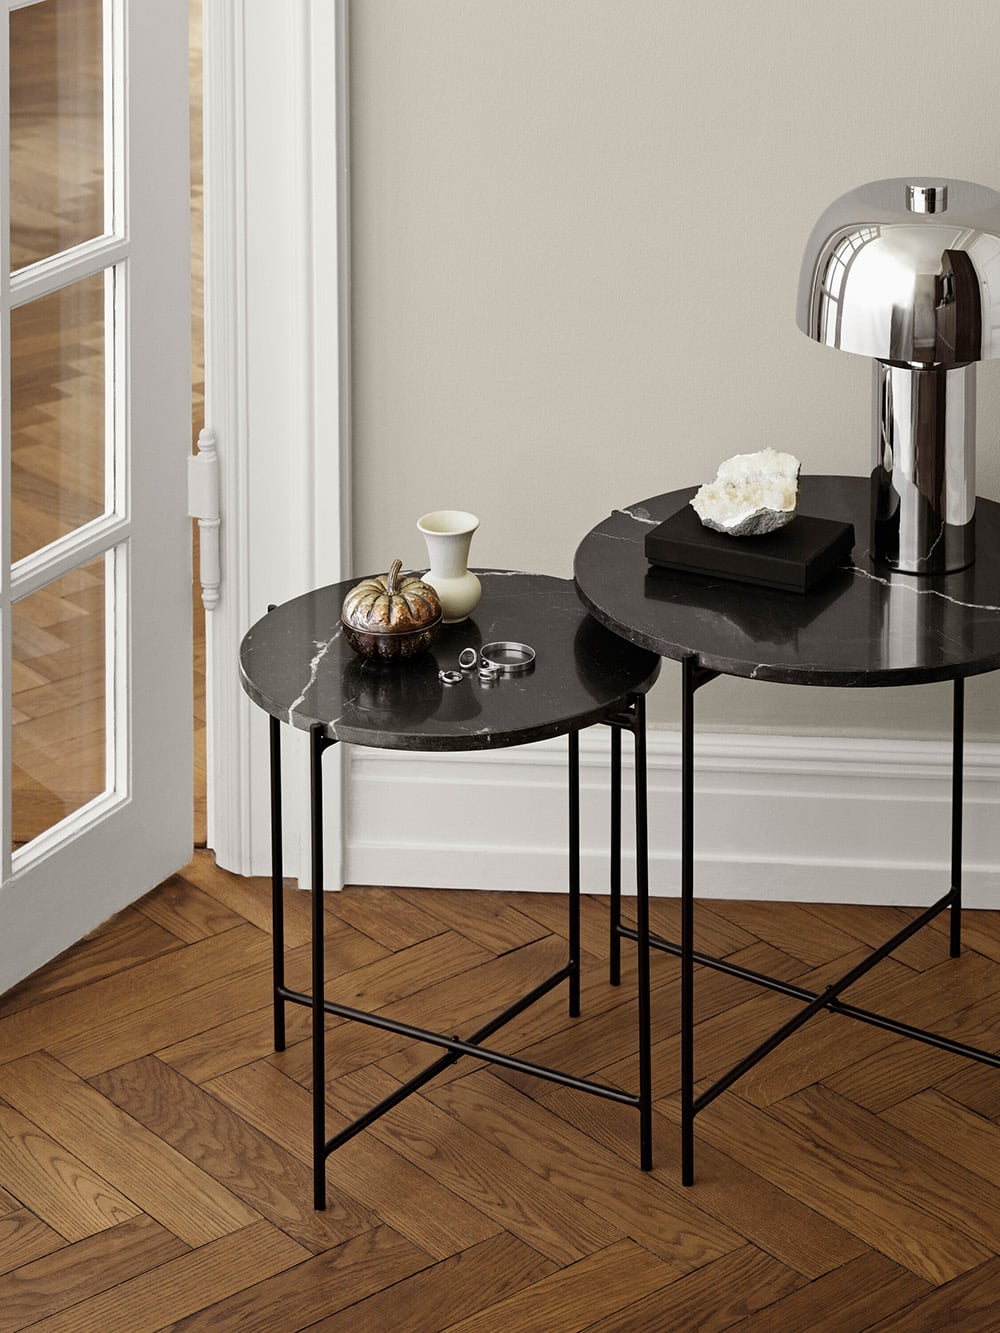 Décorateur d'intérieur en ligne Casa Daya présente un Jeu de 2 tables d'appoint avec plateau en marbre noir et lampe chromée design.